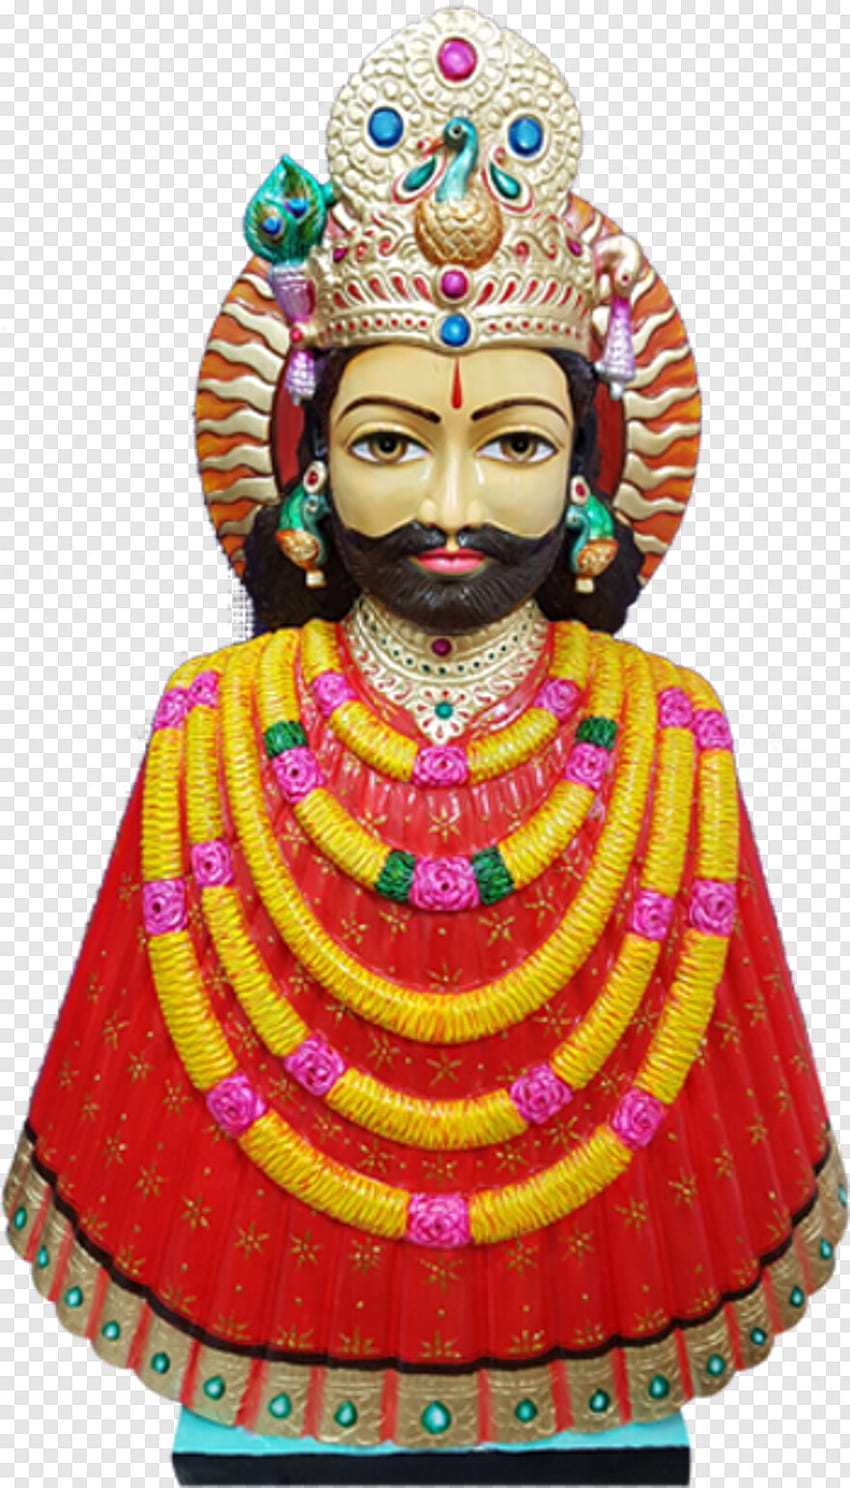 Hanuman ji image png